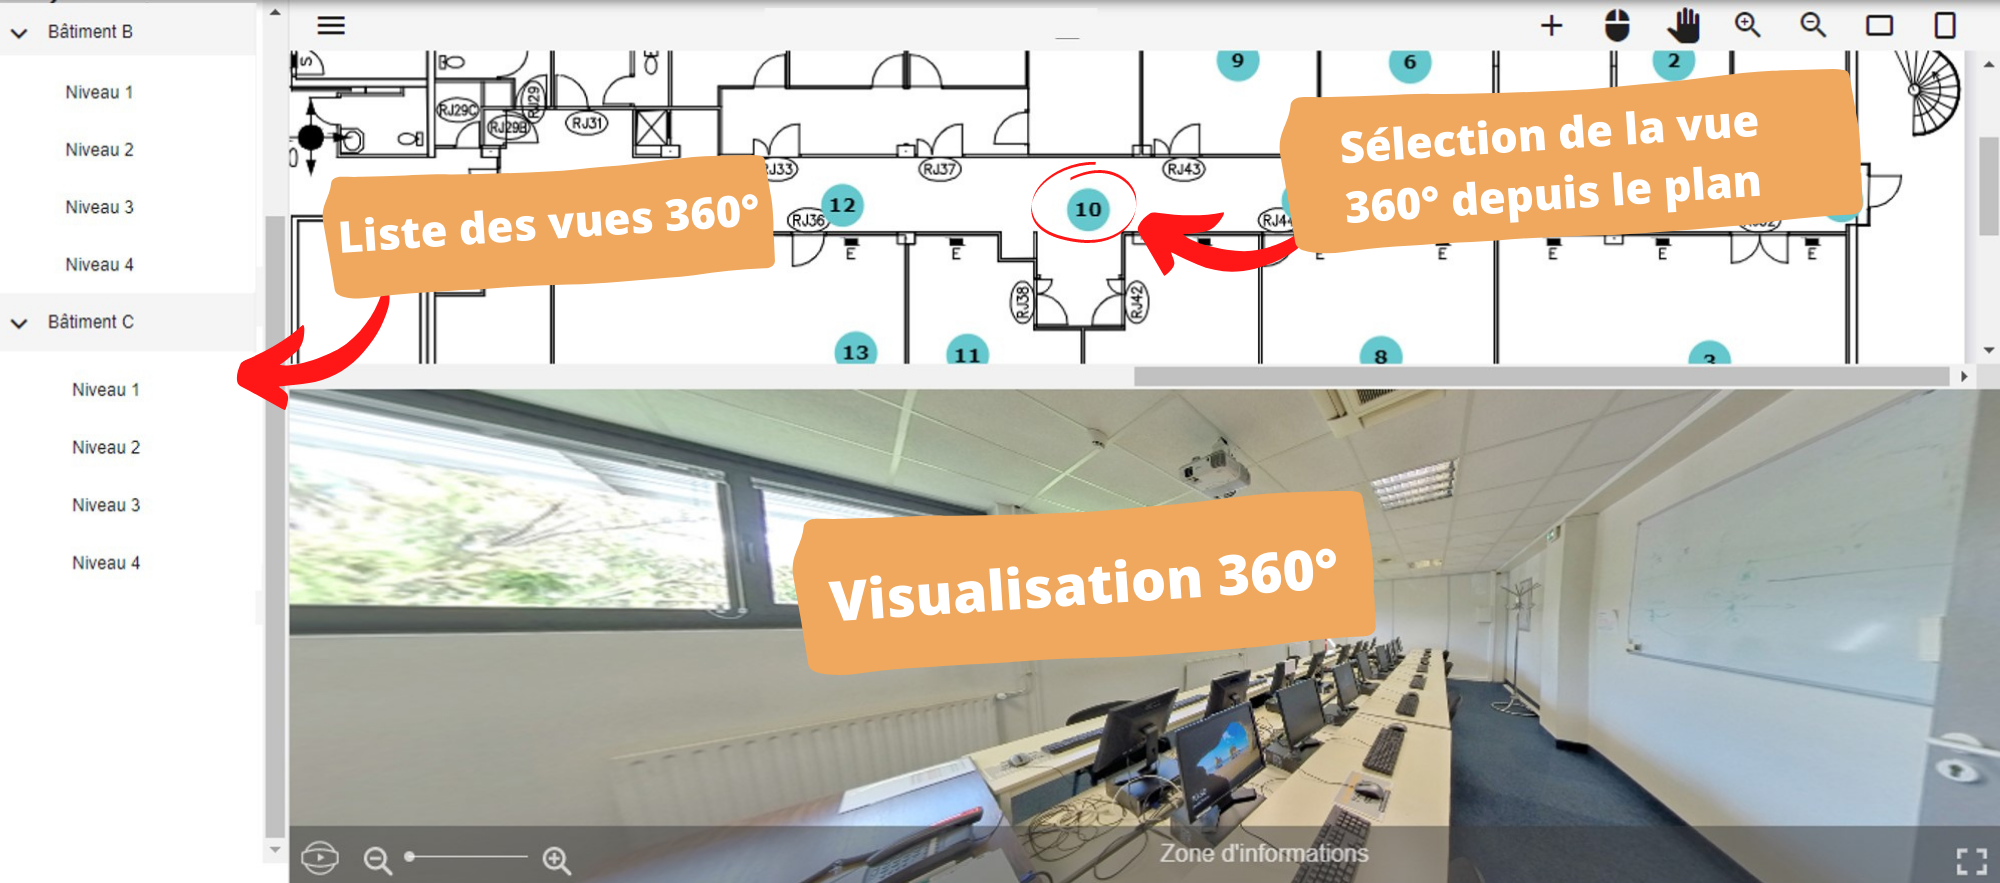 Visualisation 360° d'un site industriel